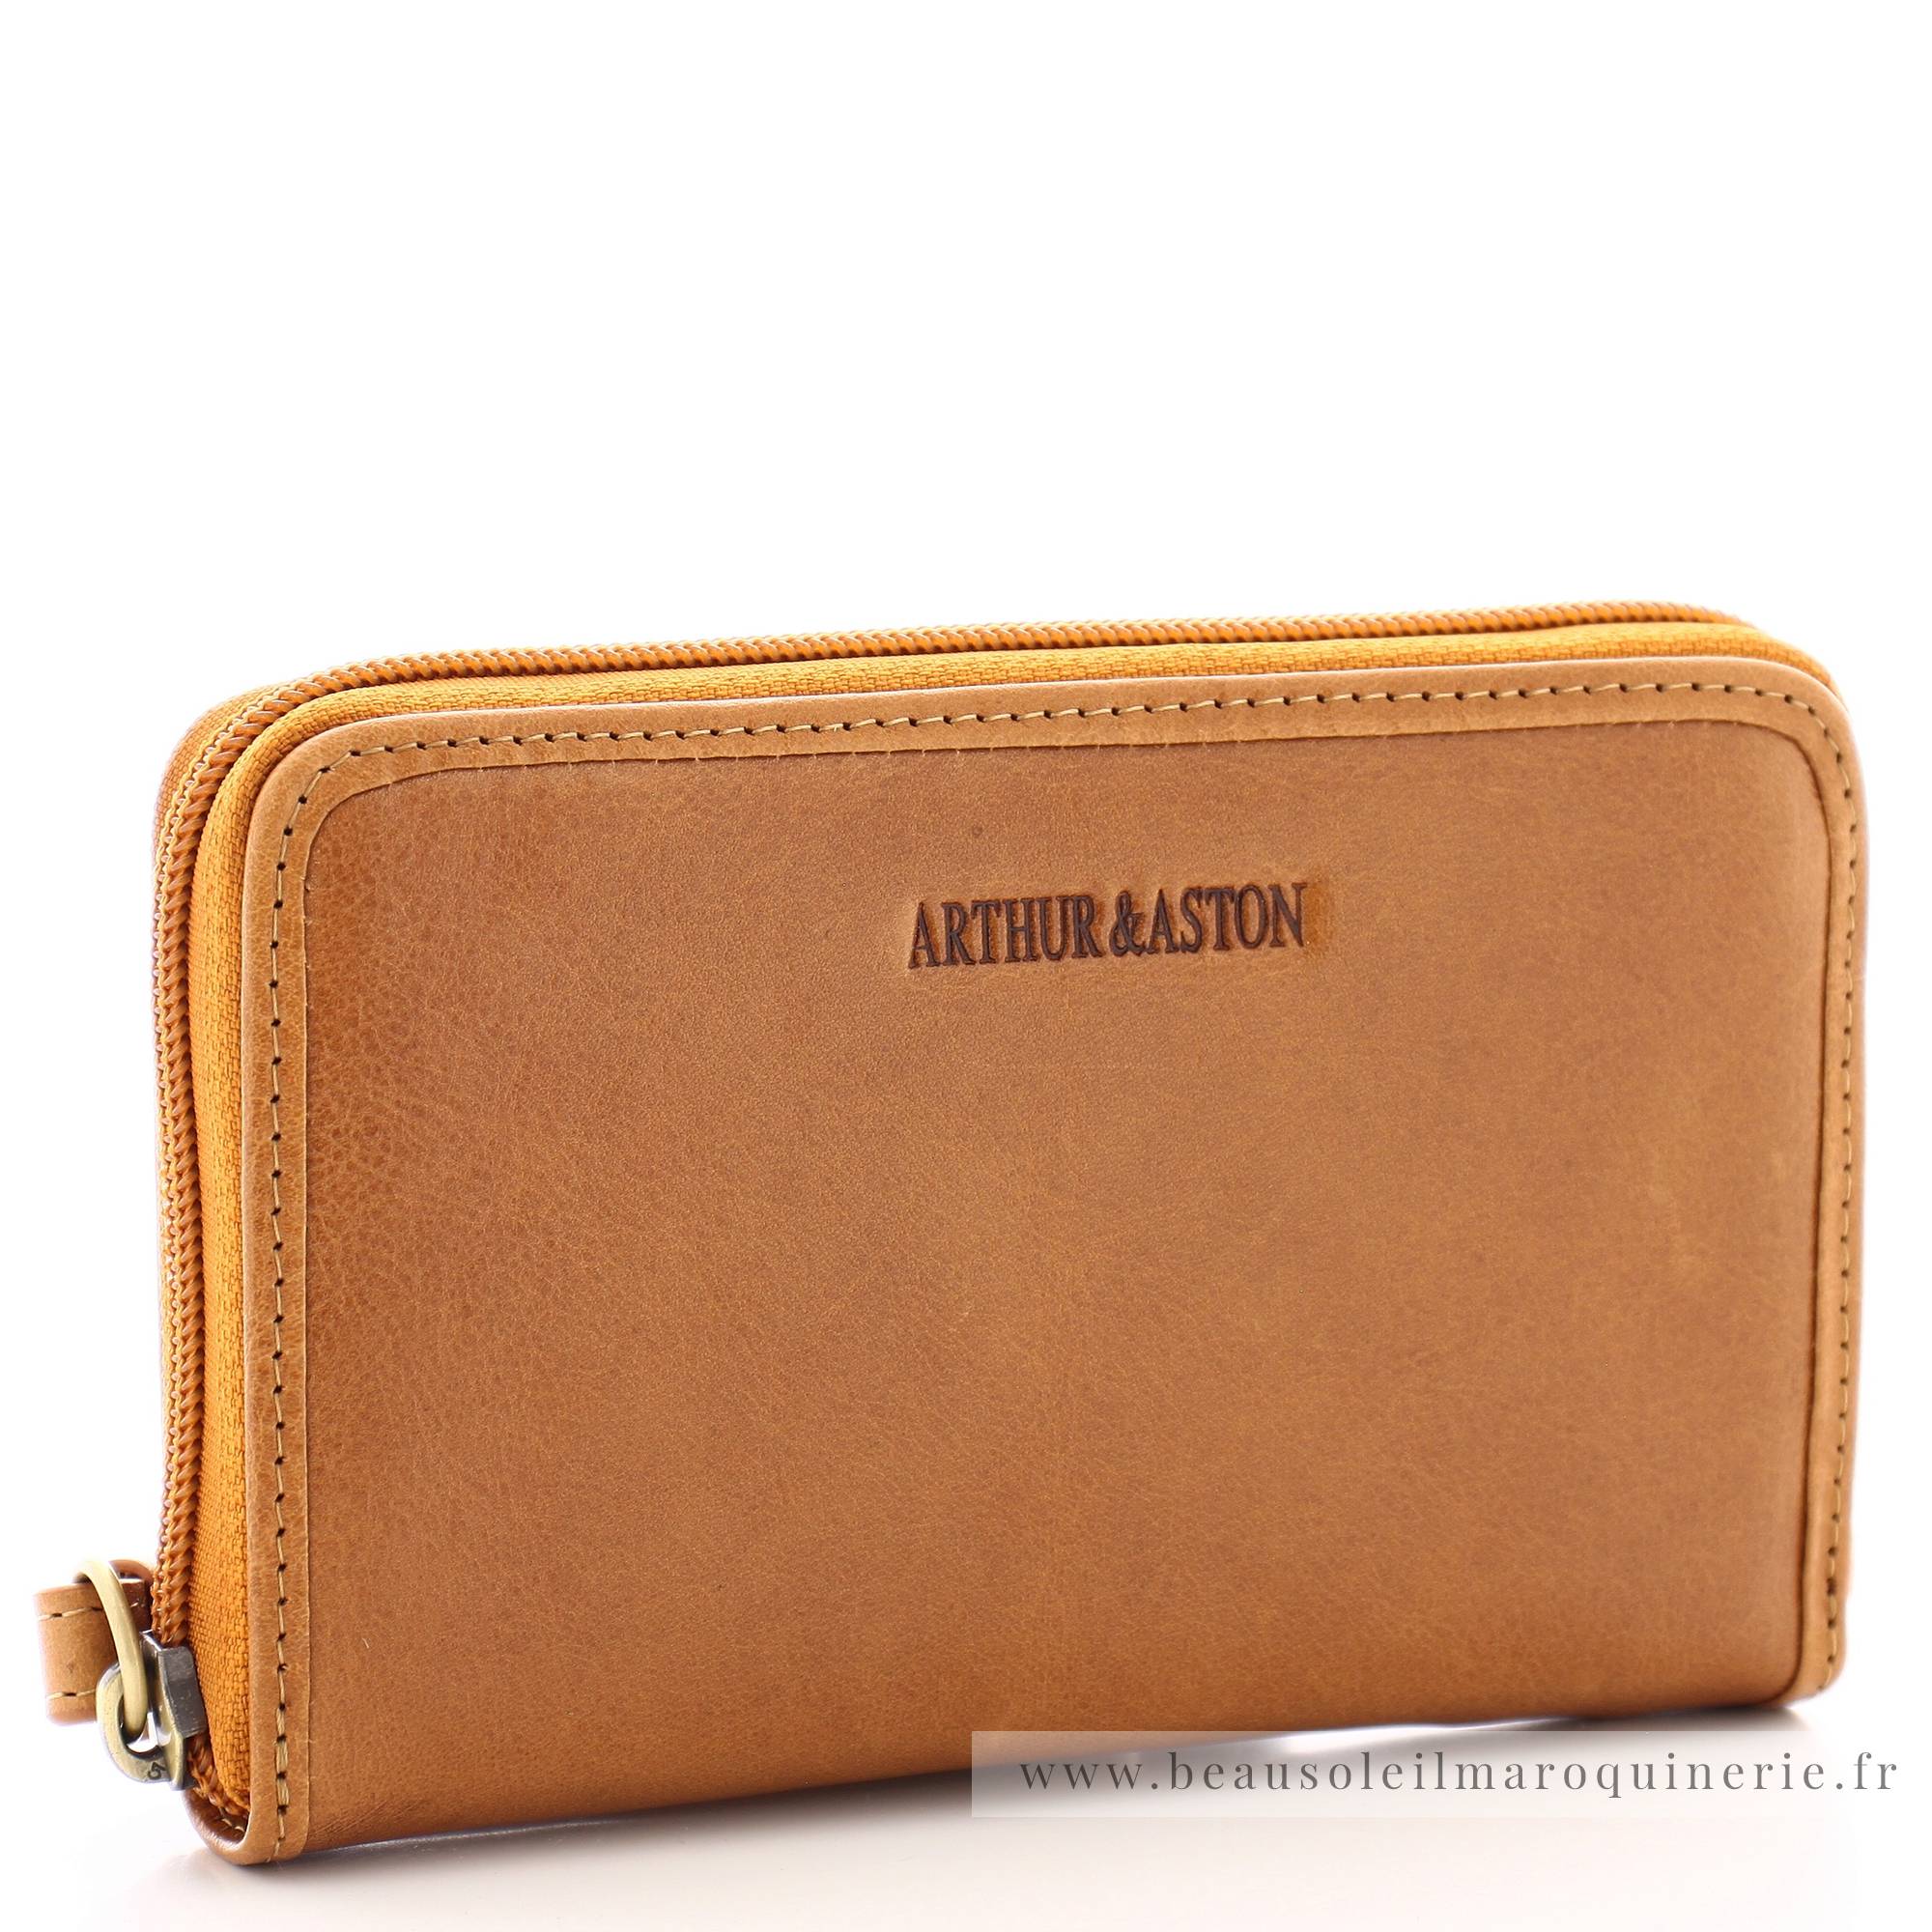 Porte-monnaie zippé Arthur Aston Edith A123-192-C couleur cognac, vue de côté